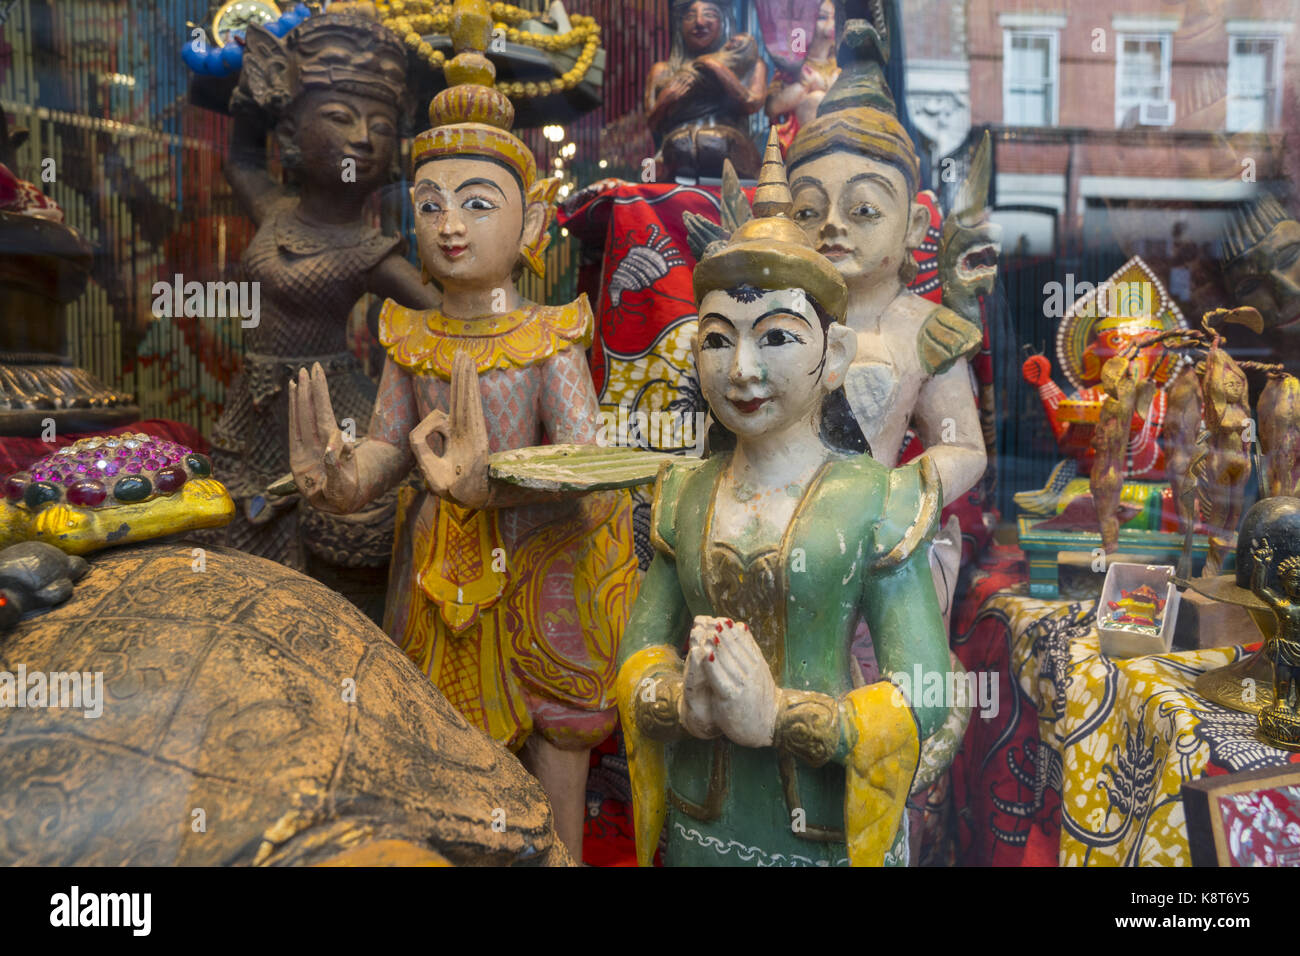 L'art religieux de l'Asie dans la fenêtre dans un magasin à Greenwich Village, New York. Banque D'Images